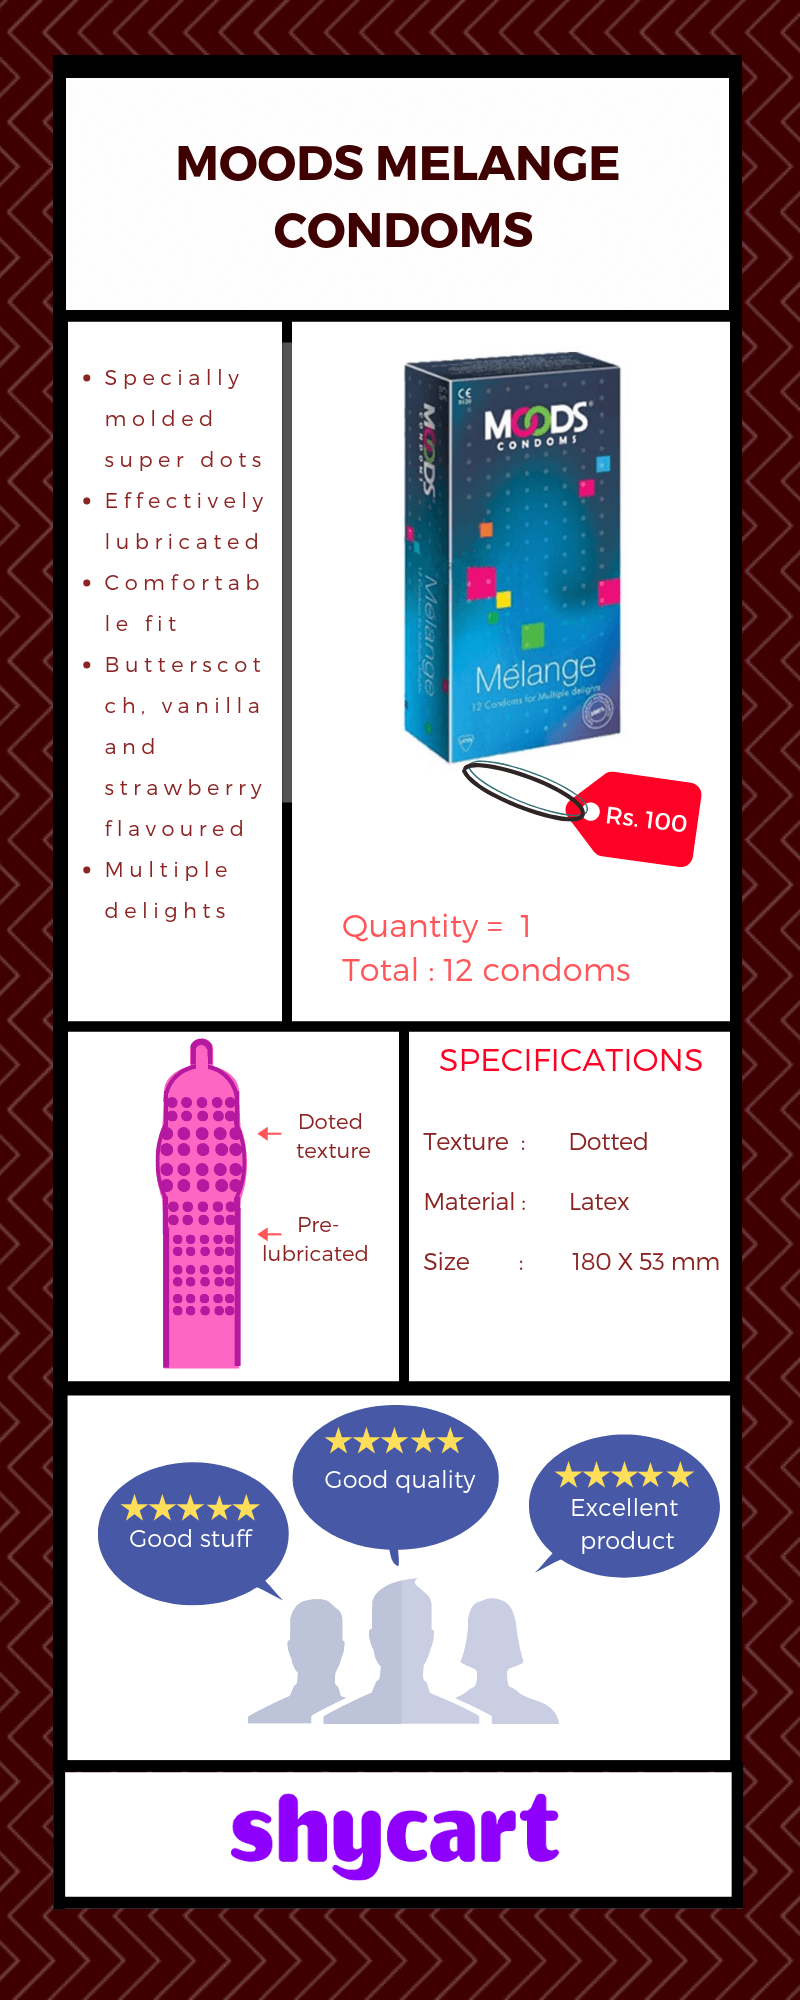 Overview of Moods melange condoms